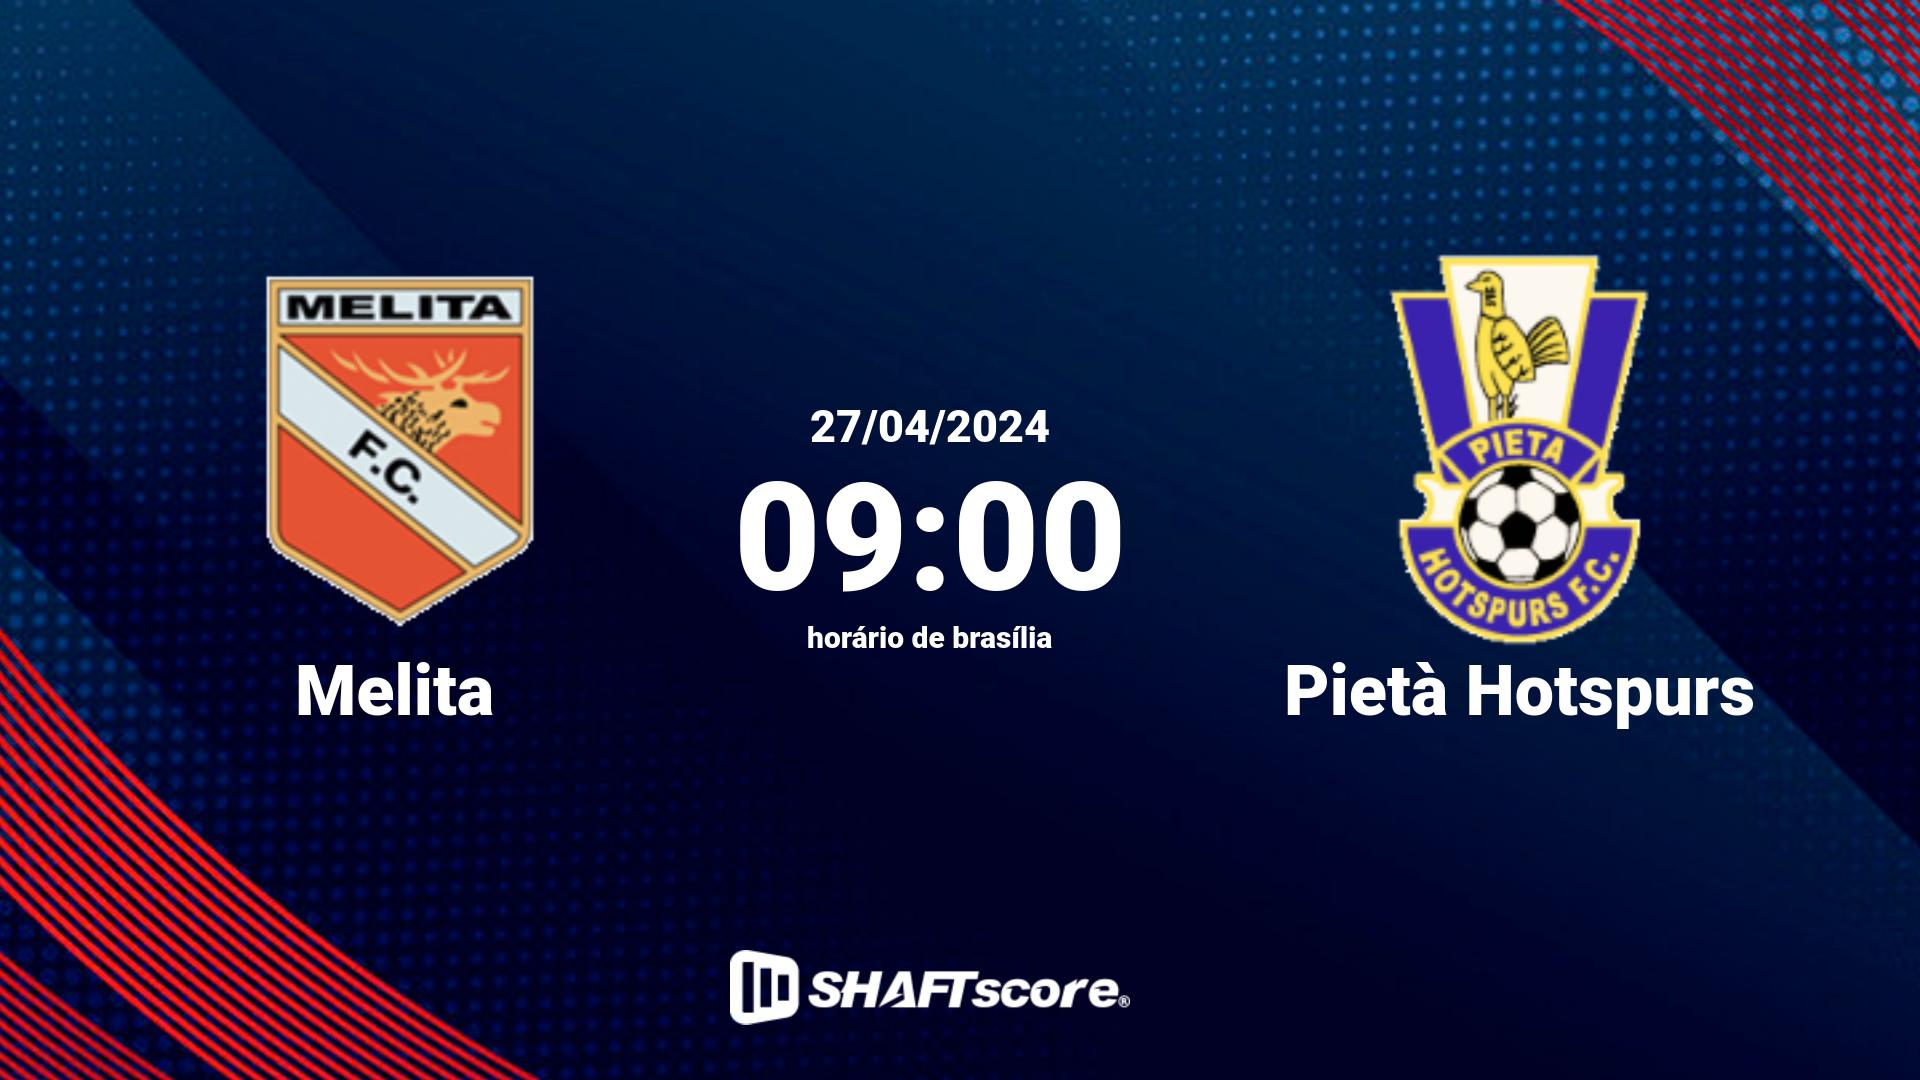 Estatísticas do jogo Melita vs Pietà Hotspurs 27.04 09:00